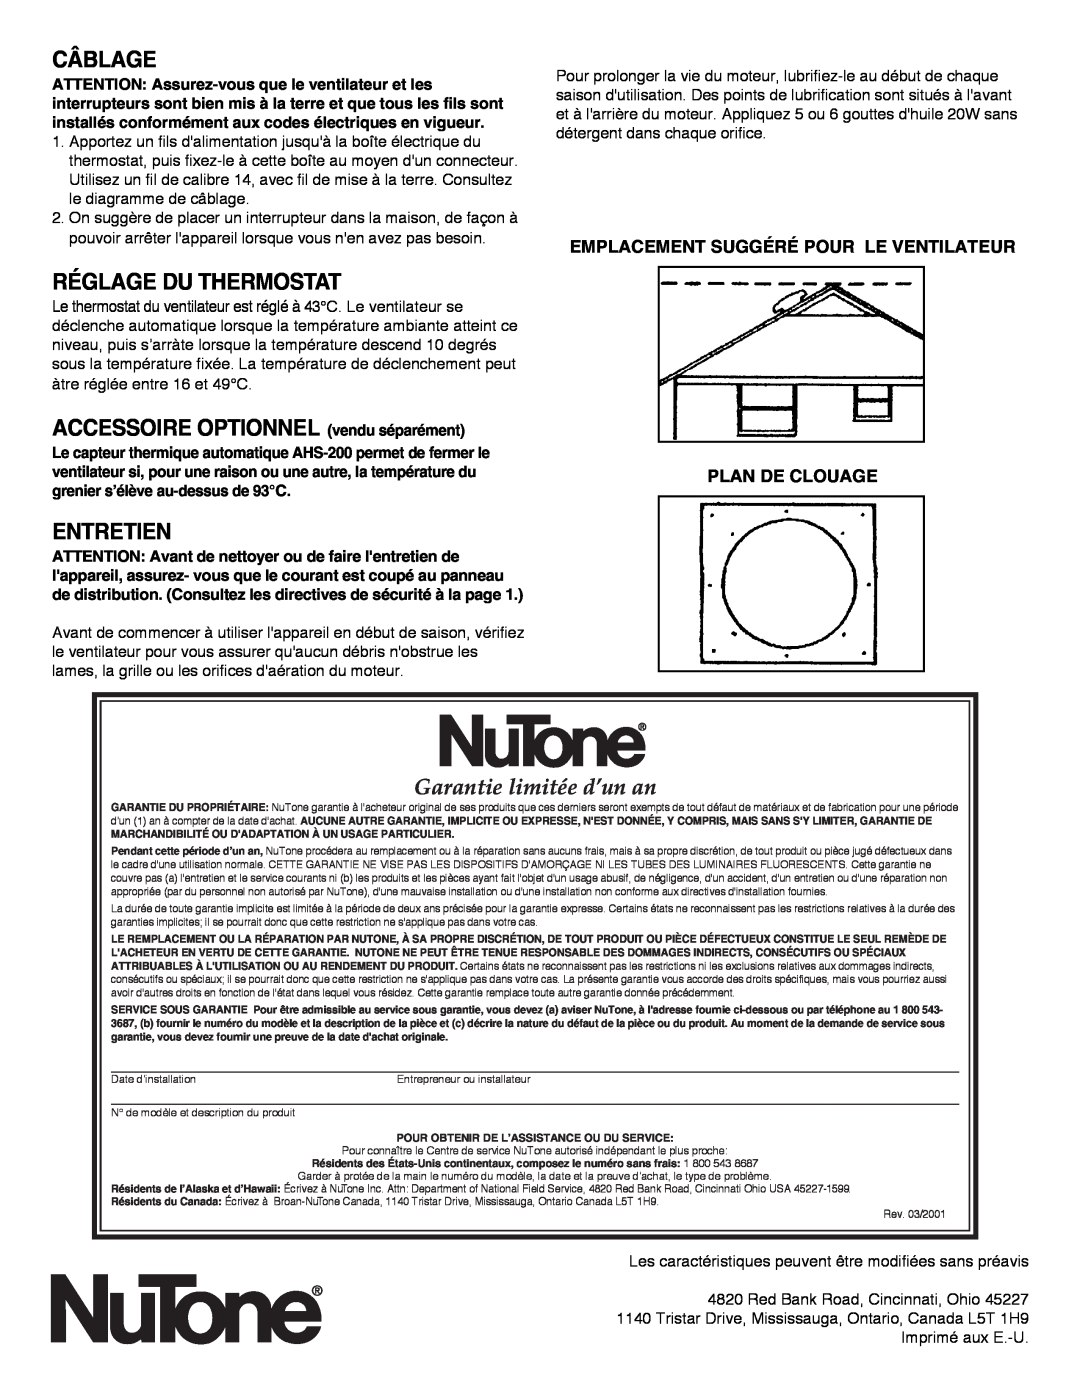 NuTone RF-49 Series Câblage, Réglage Du Thermostat, ACCESSOIRE OPTIONNEL vendu séparément, Entretien 